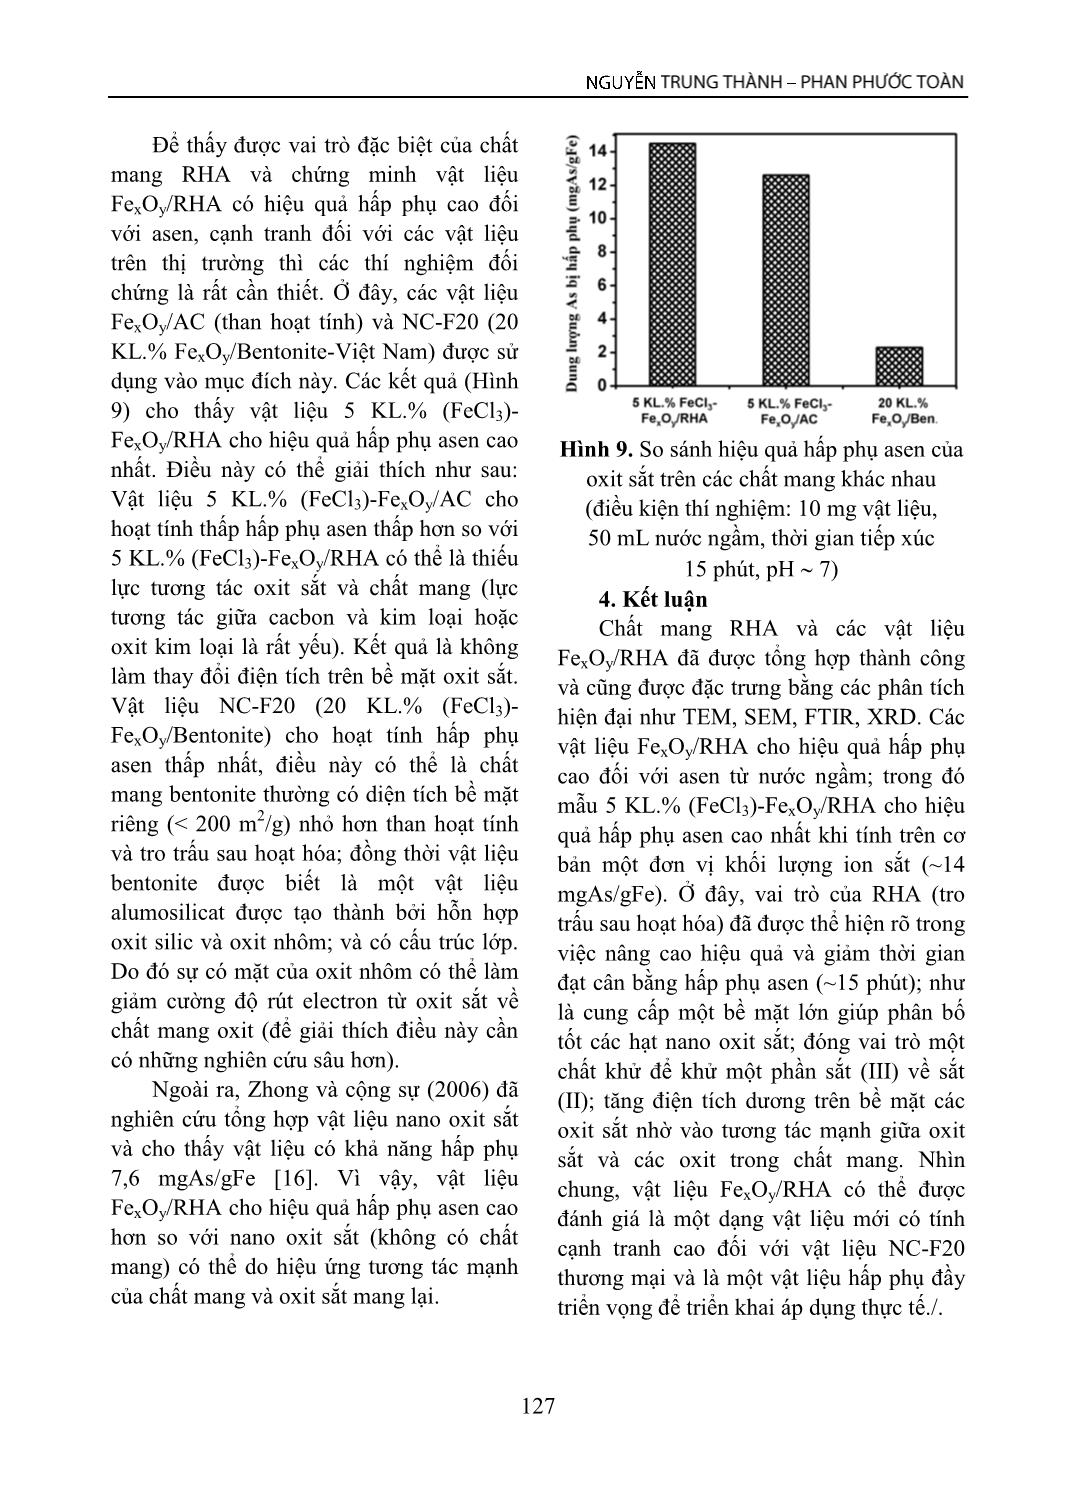 Tổng hợp vật liệu FexOy/ tro trấu và vai trò của chất mang trong hấp phụ Asen từ nước ngầm trang 7